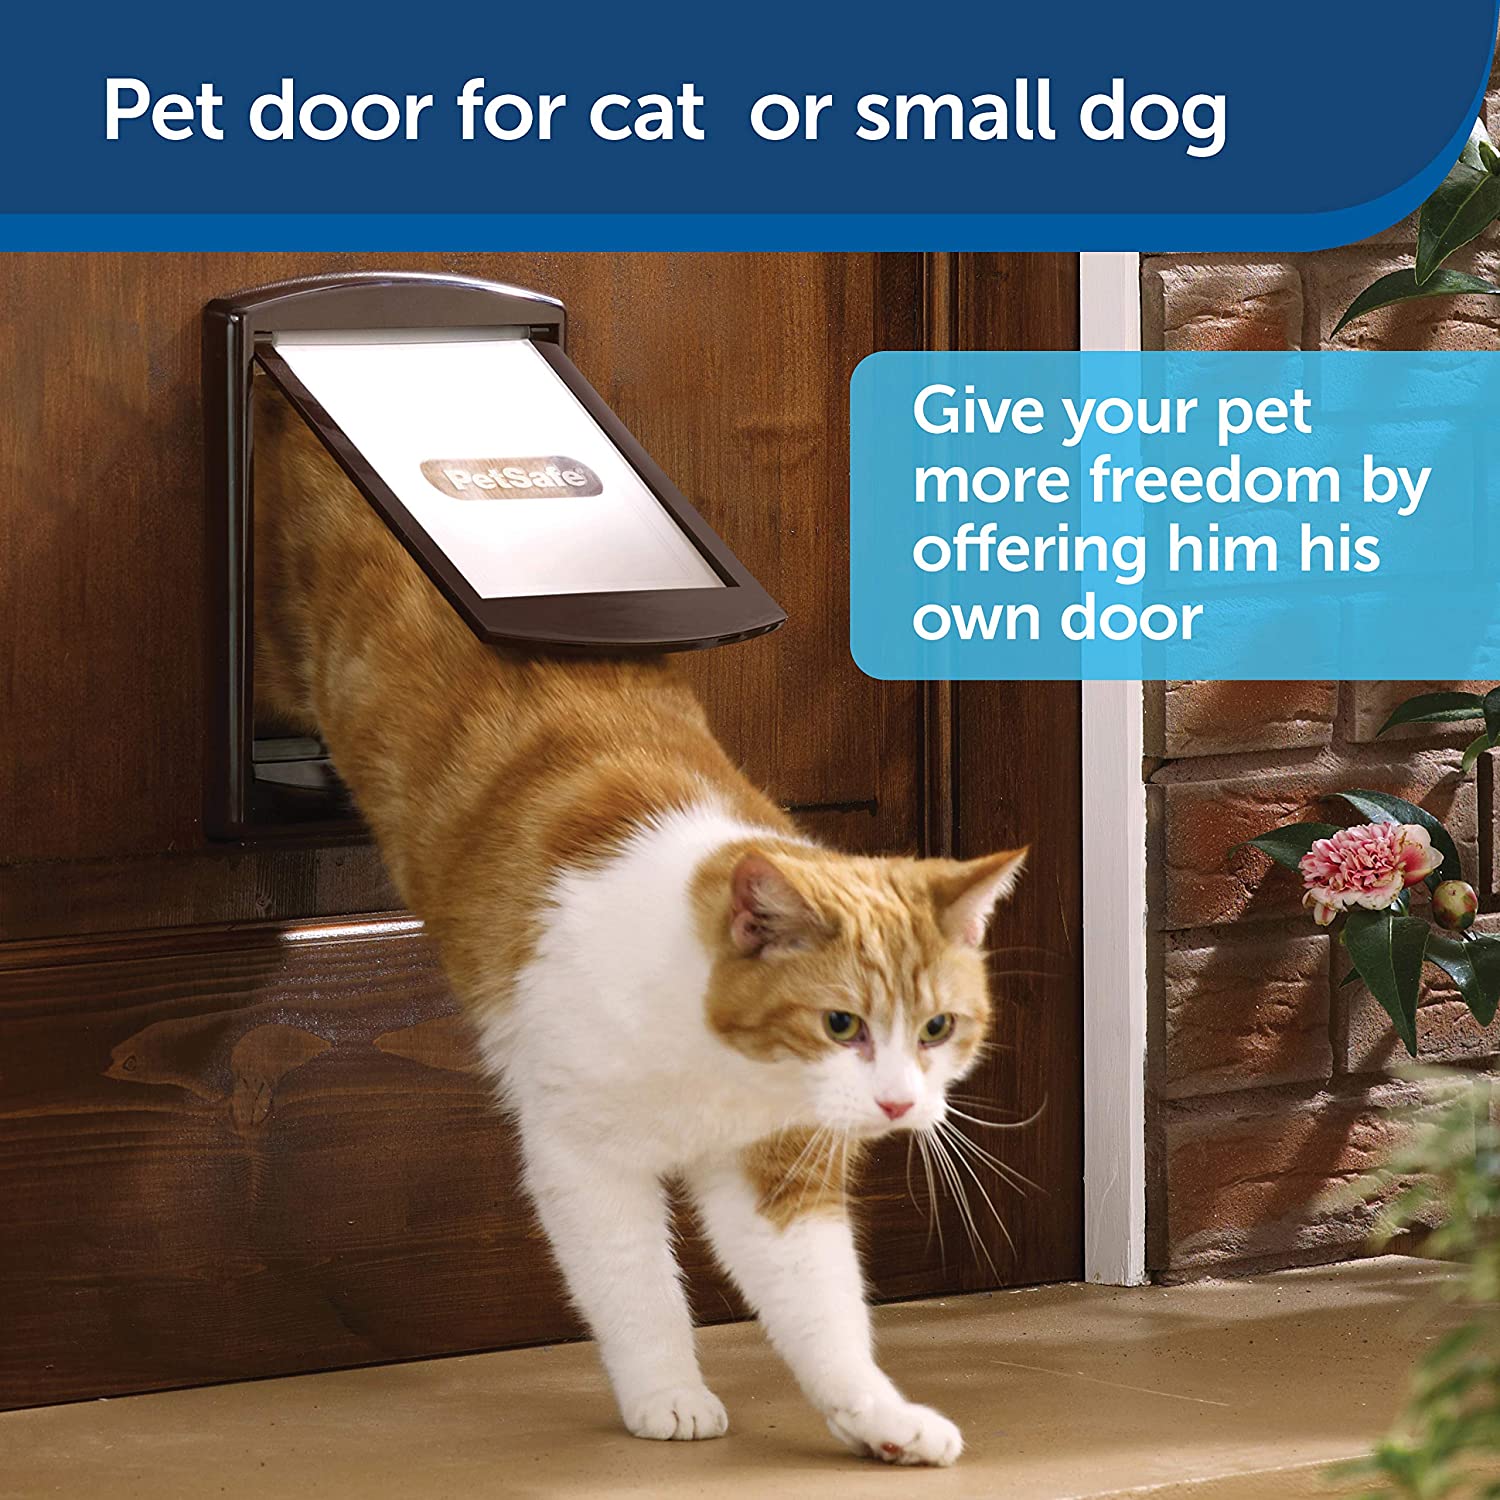 یک سیستم قفل 2 جهته ارائه می دهد که به صاحبان این امکان را می دهد تا مرزهای حیوان خانگی خود را تنظیم کنند